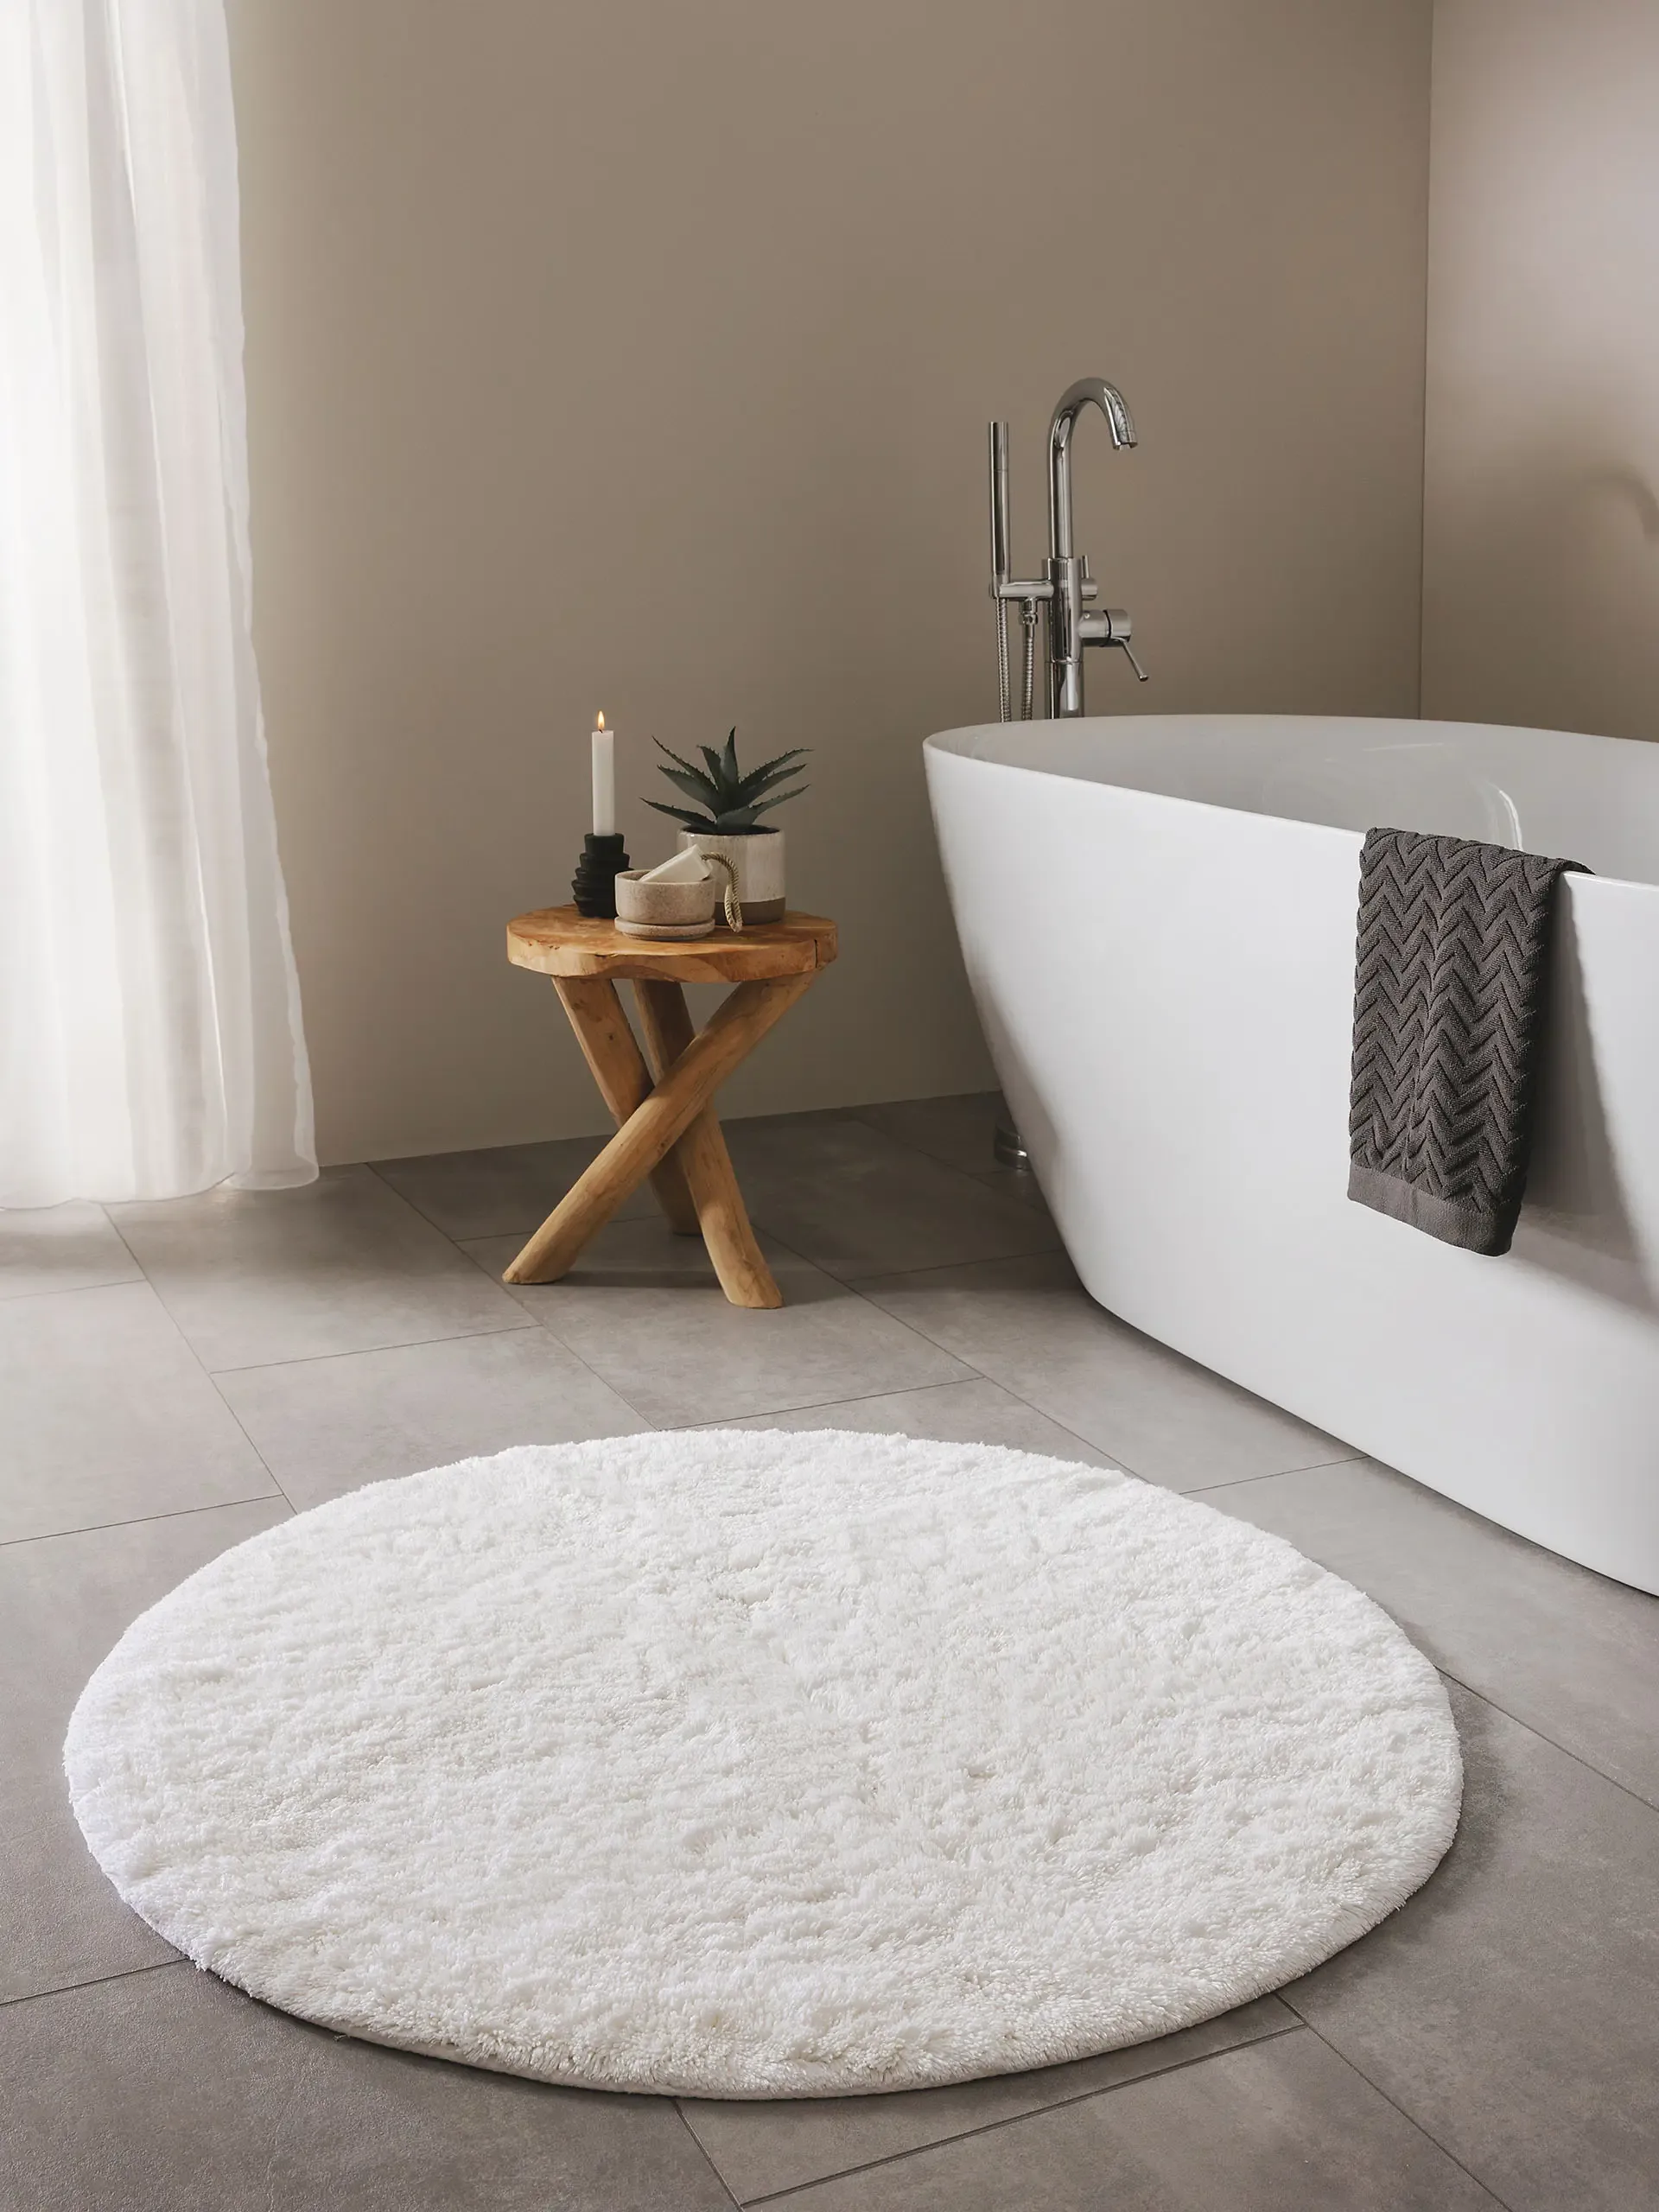 Kleines Badezimmer mit freistehender Badewanne und warmer Fußbodenheizung, in dem ein runder Badteppich mit weichen Flor liegt